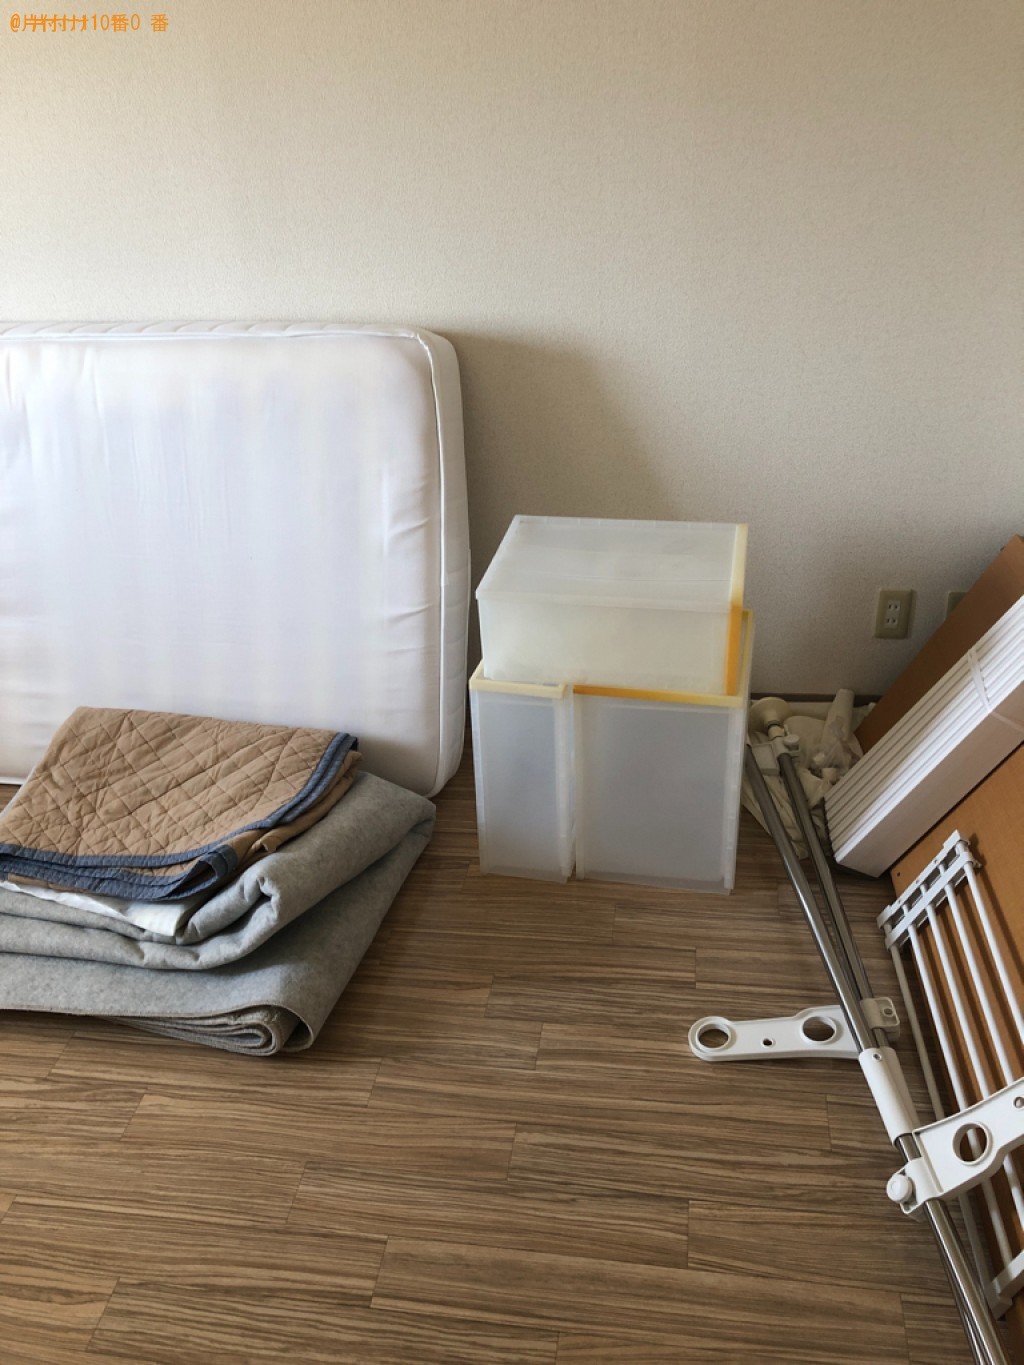 洗濯機、シングルベッドマットレス×2、布団・毛布(1枚あたり)×2、木材など